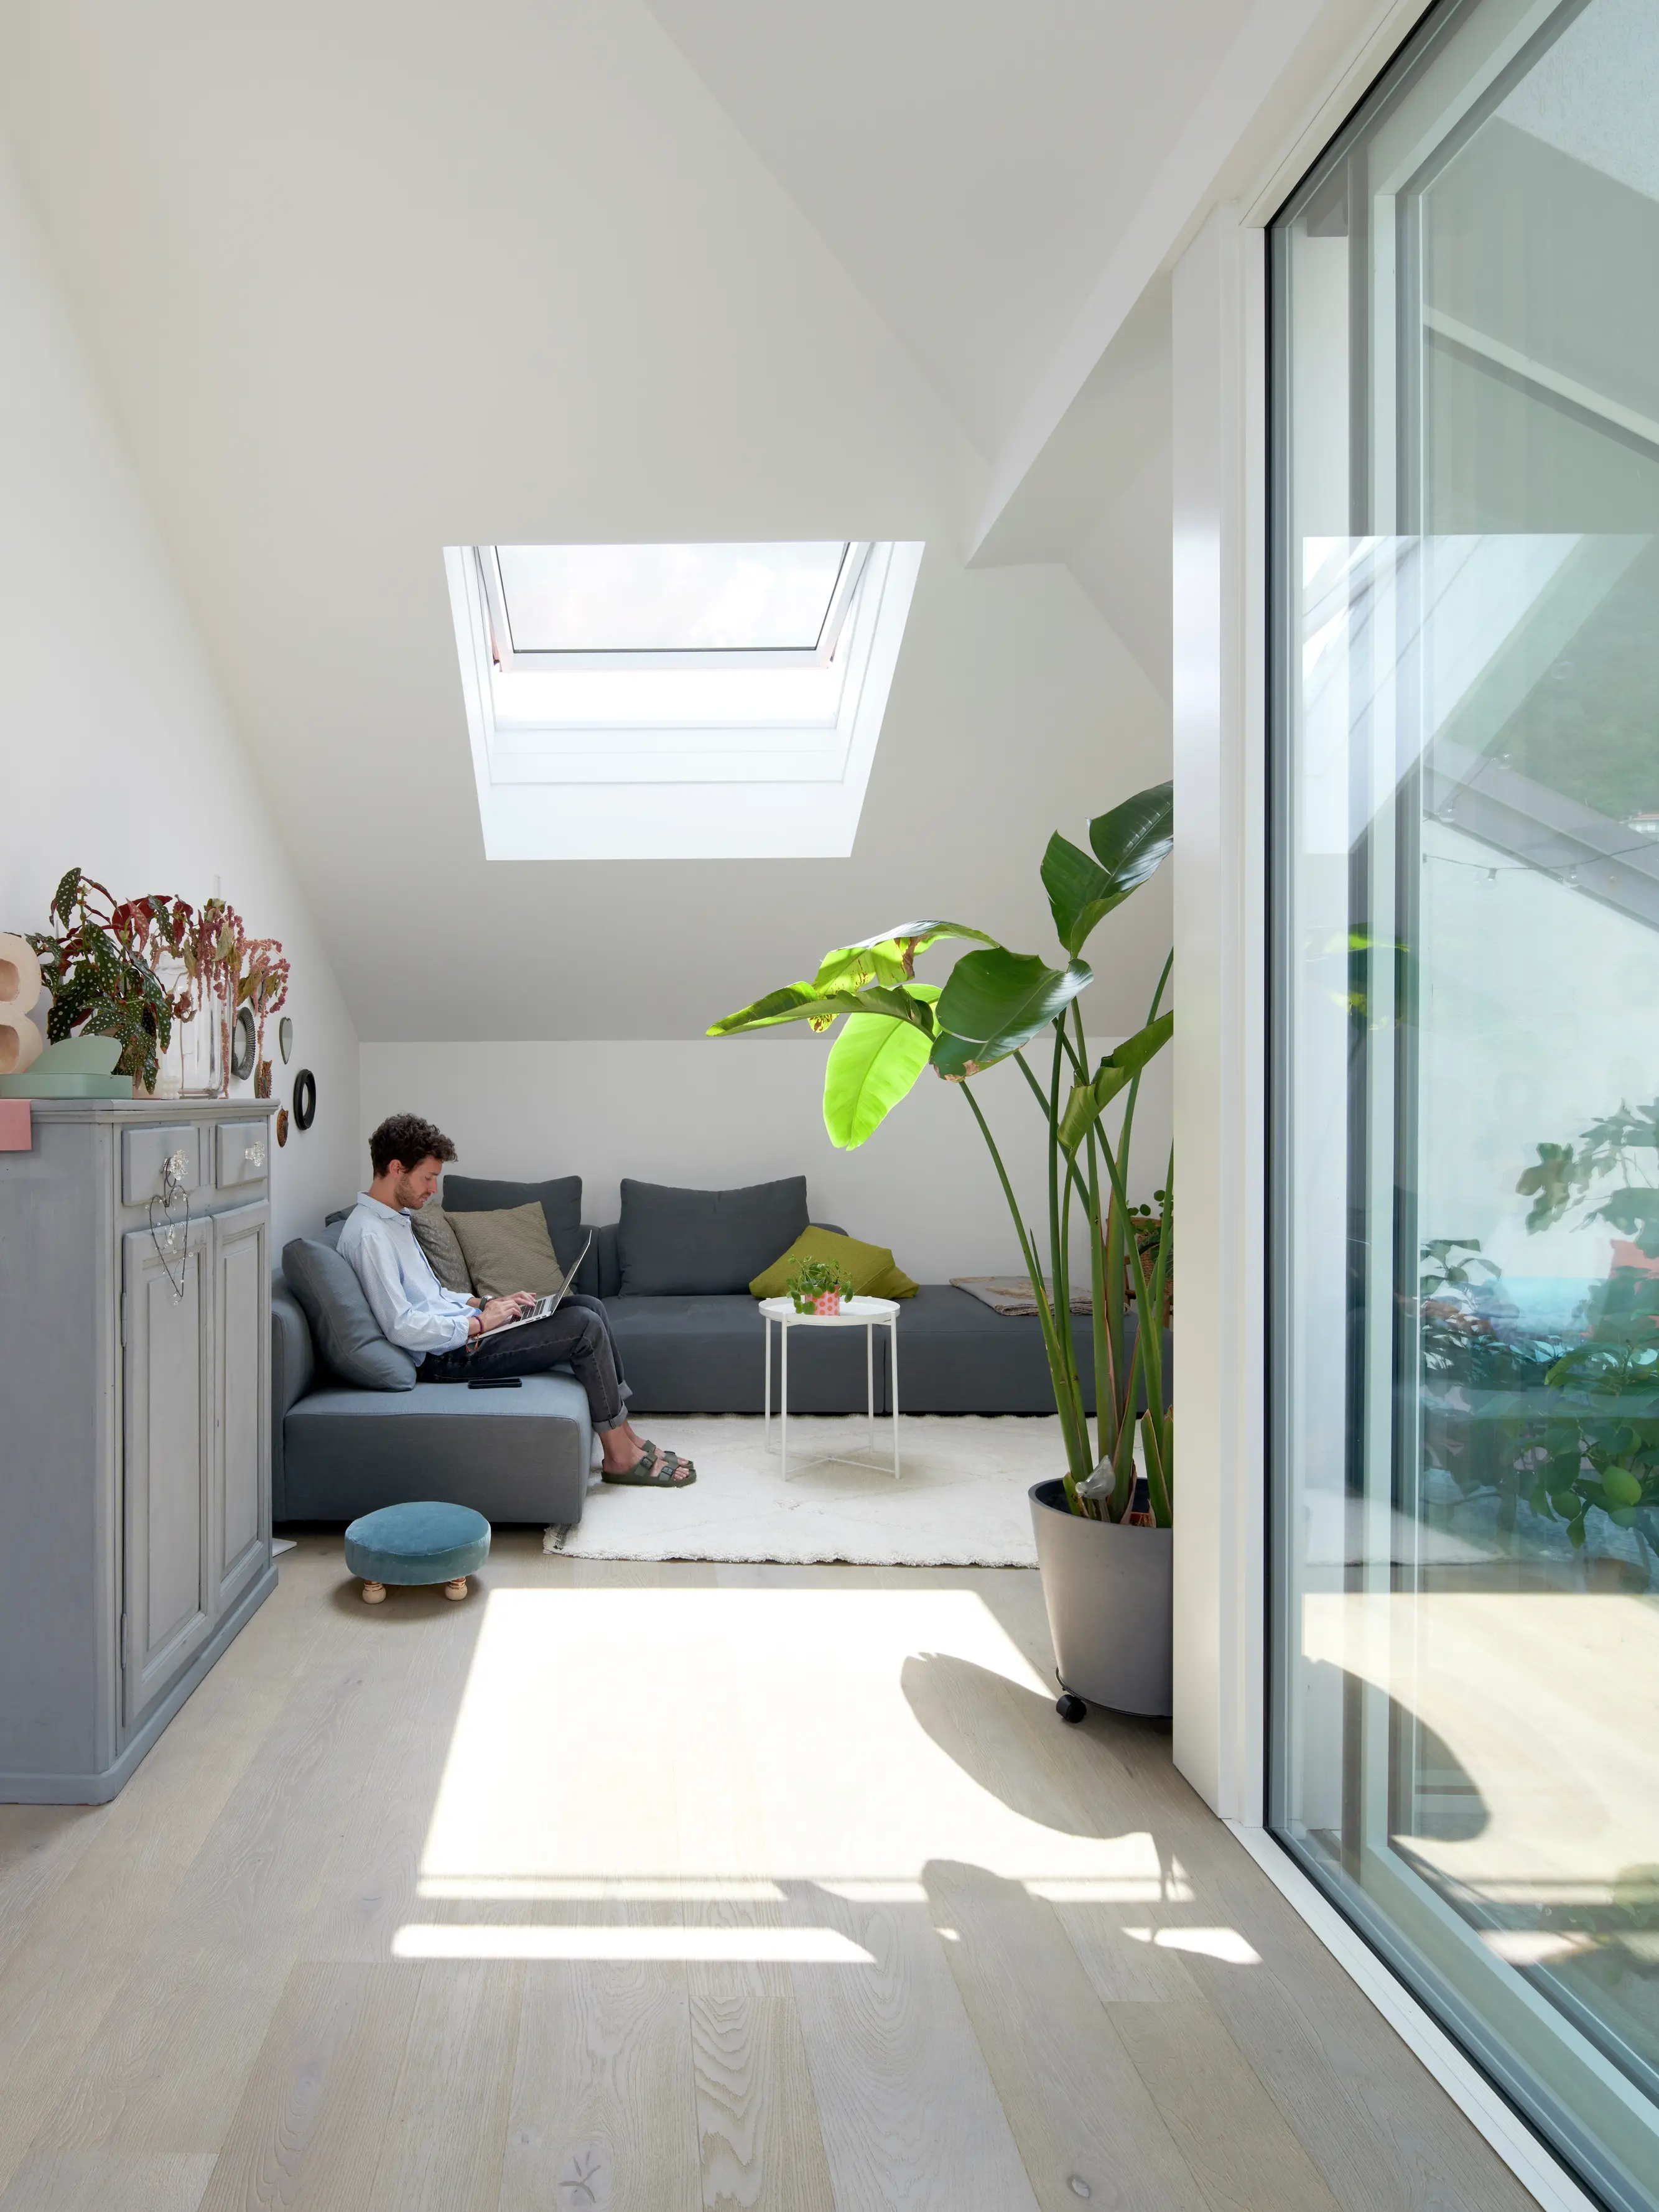 Soggiorno moderno con luce naturale proveniente da una finestra per tetti VELUX e porta scorrevole in vetro.